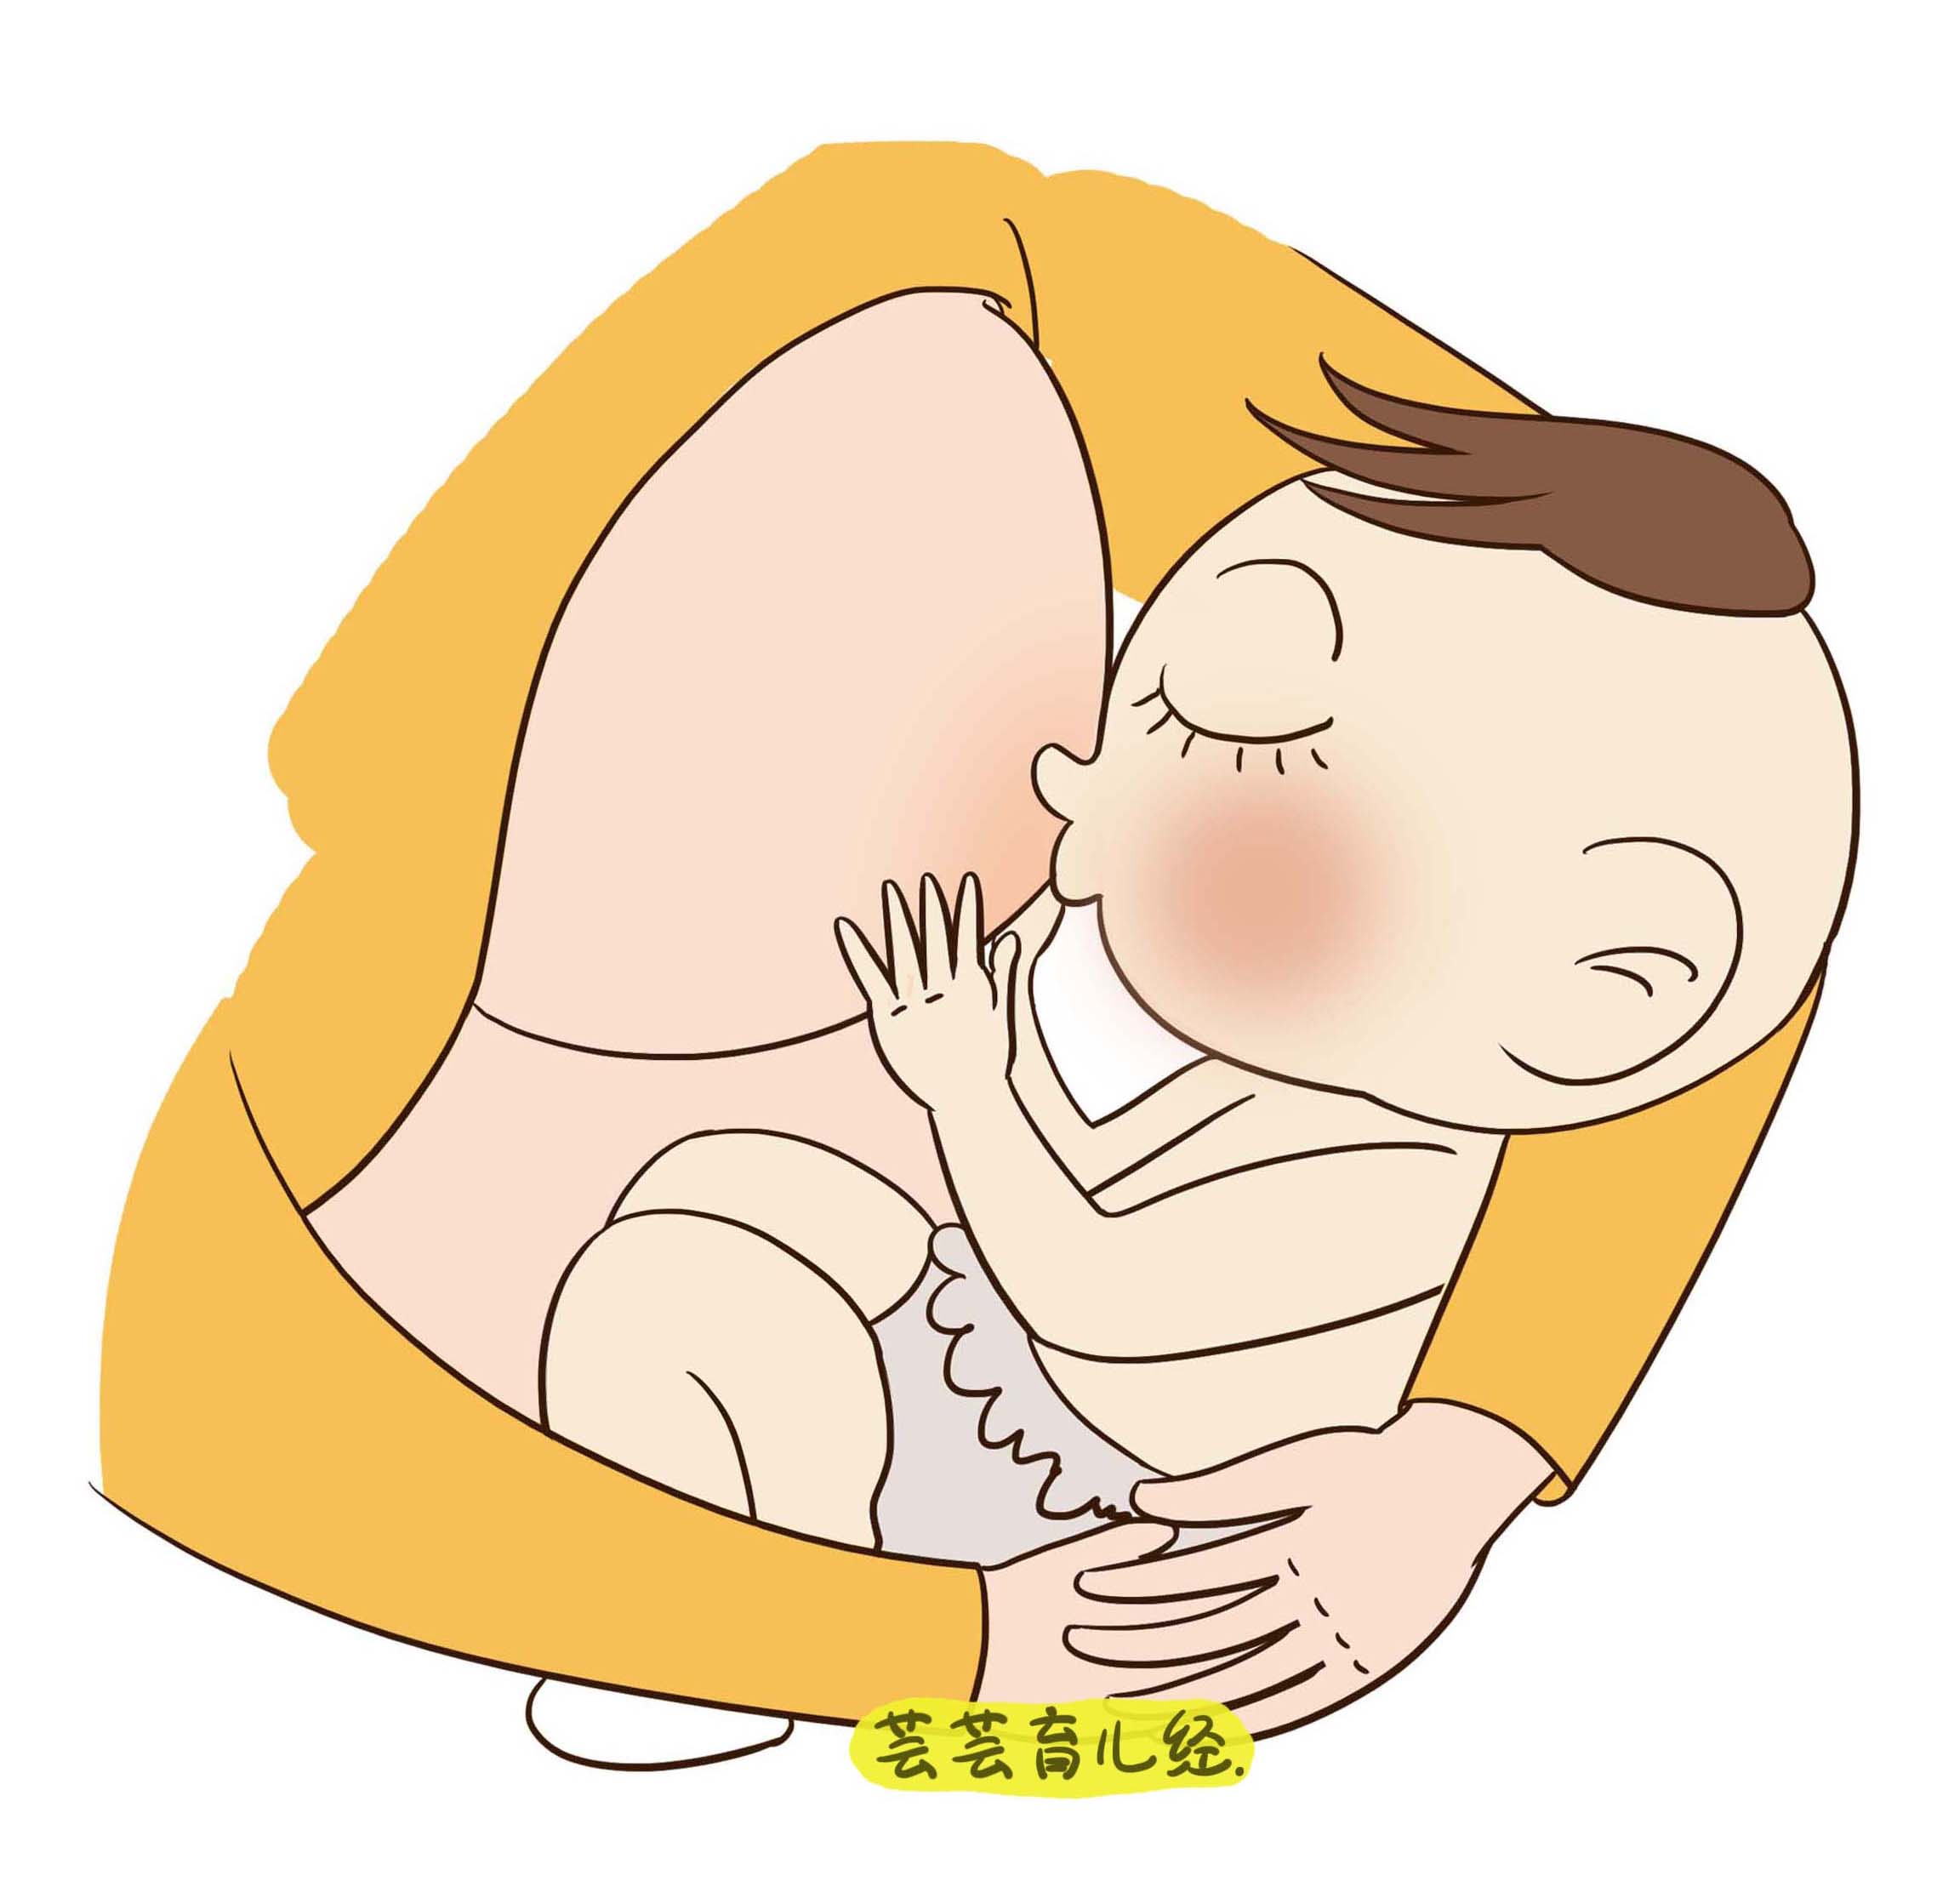 婴儿吸奶口腔内部图图片